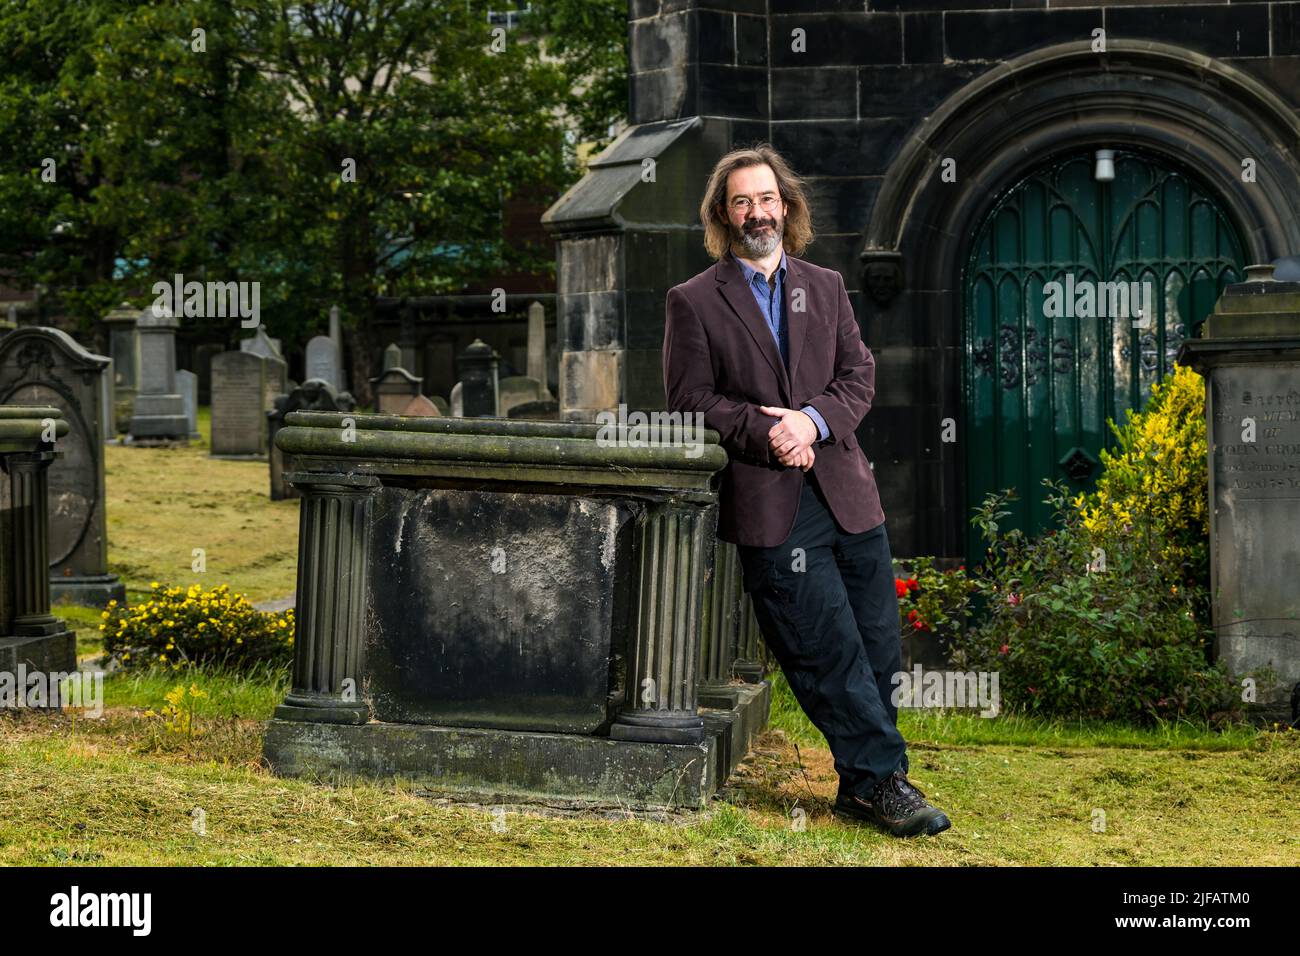 James Oswald, auteur du crime écossais, dans le cimetière de l'église paroissiale de Leith Sud, avec une vieille pierre tombale, Édimbourg, Écosse, Royaume-Uni Banque D'Images